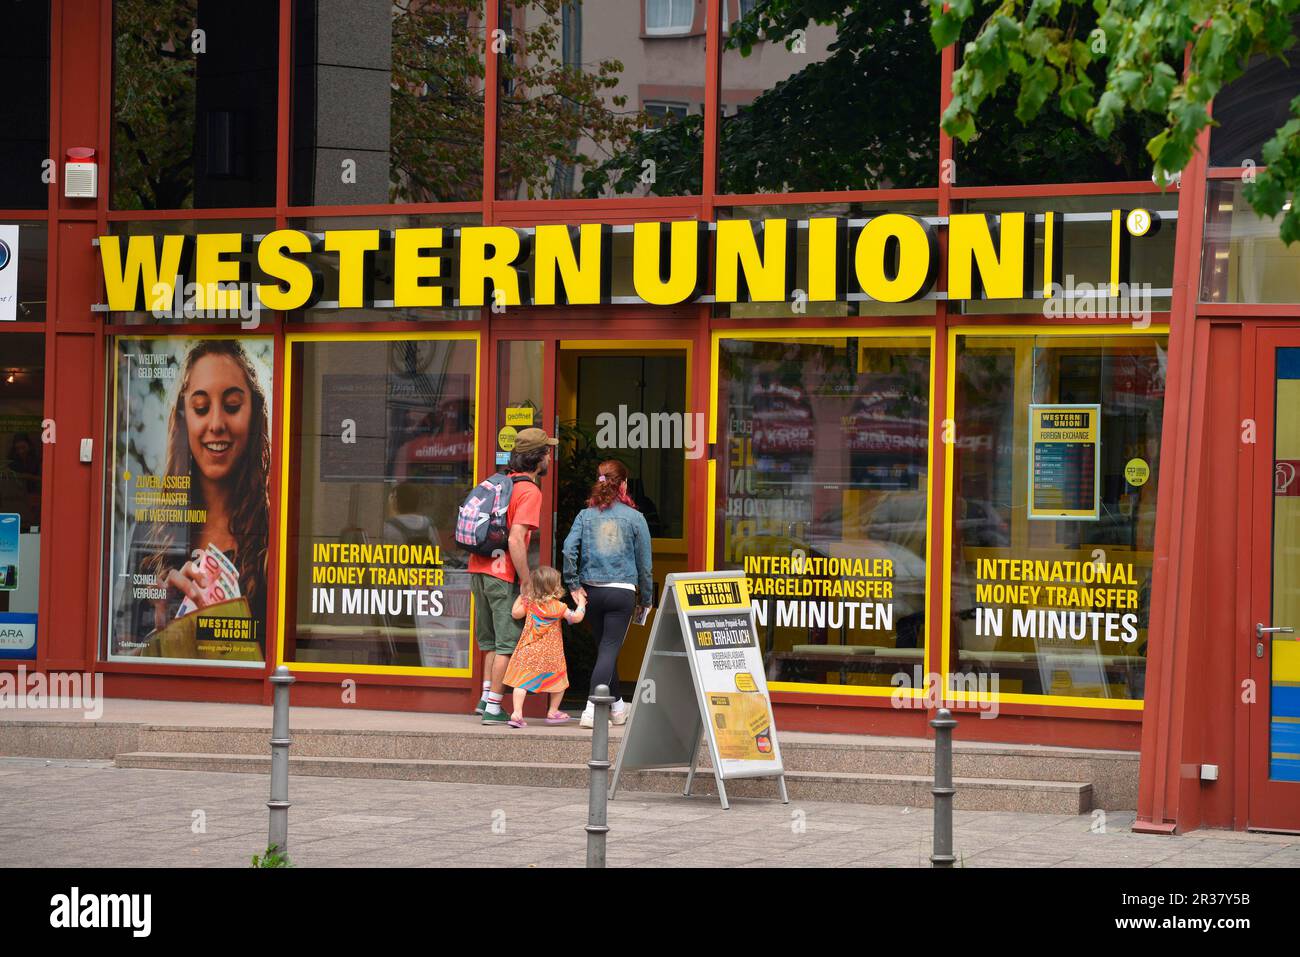 188 fotos de stock e banco de imagens de Western Union Foundation - Getty  Images